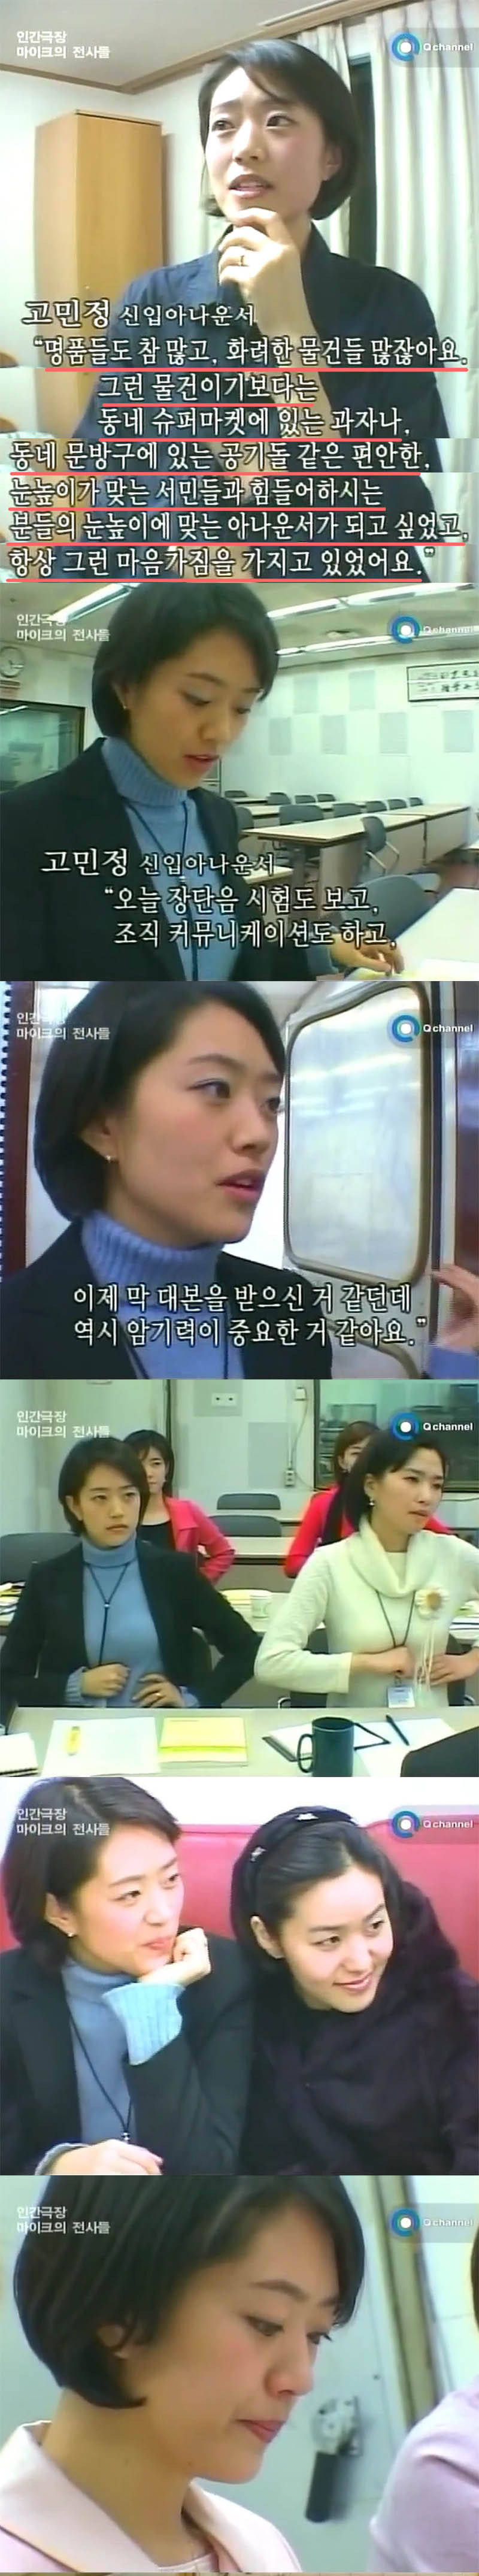 고민정 KBS 신입아나운서 연수시절